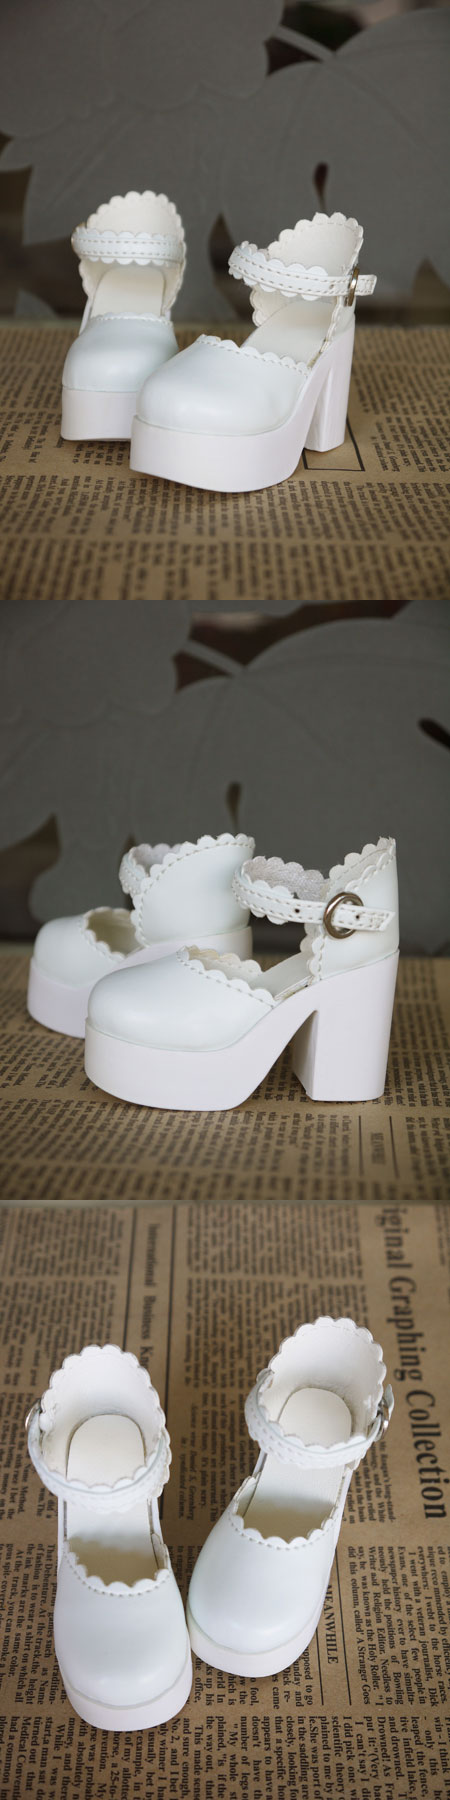 ドール靴 SDサイズ人形用  白色 ハイヒール靴